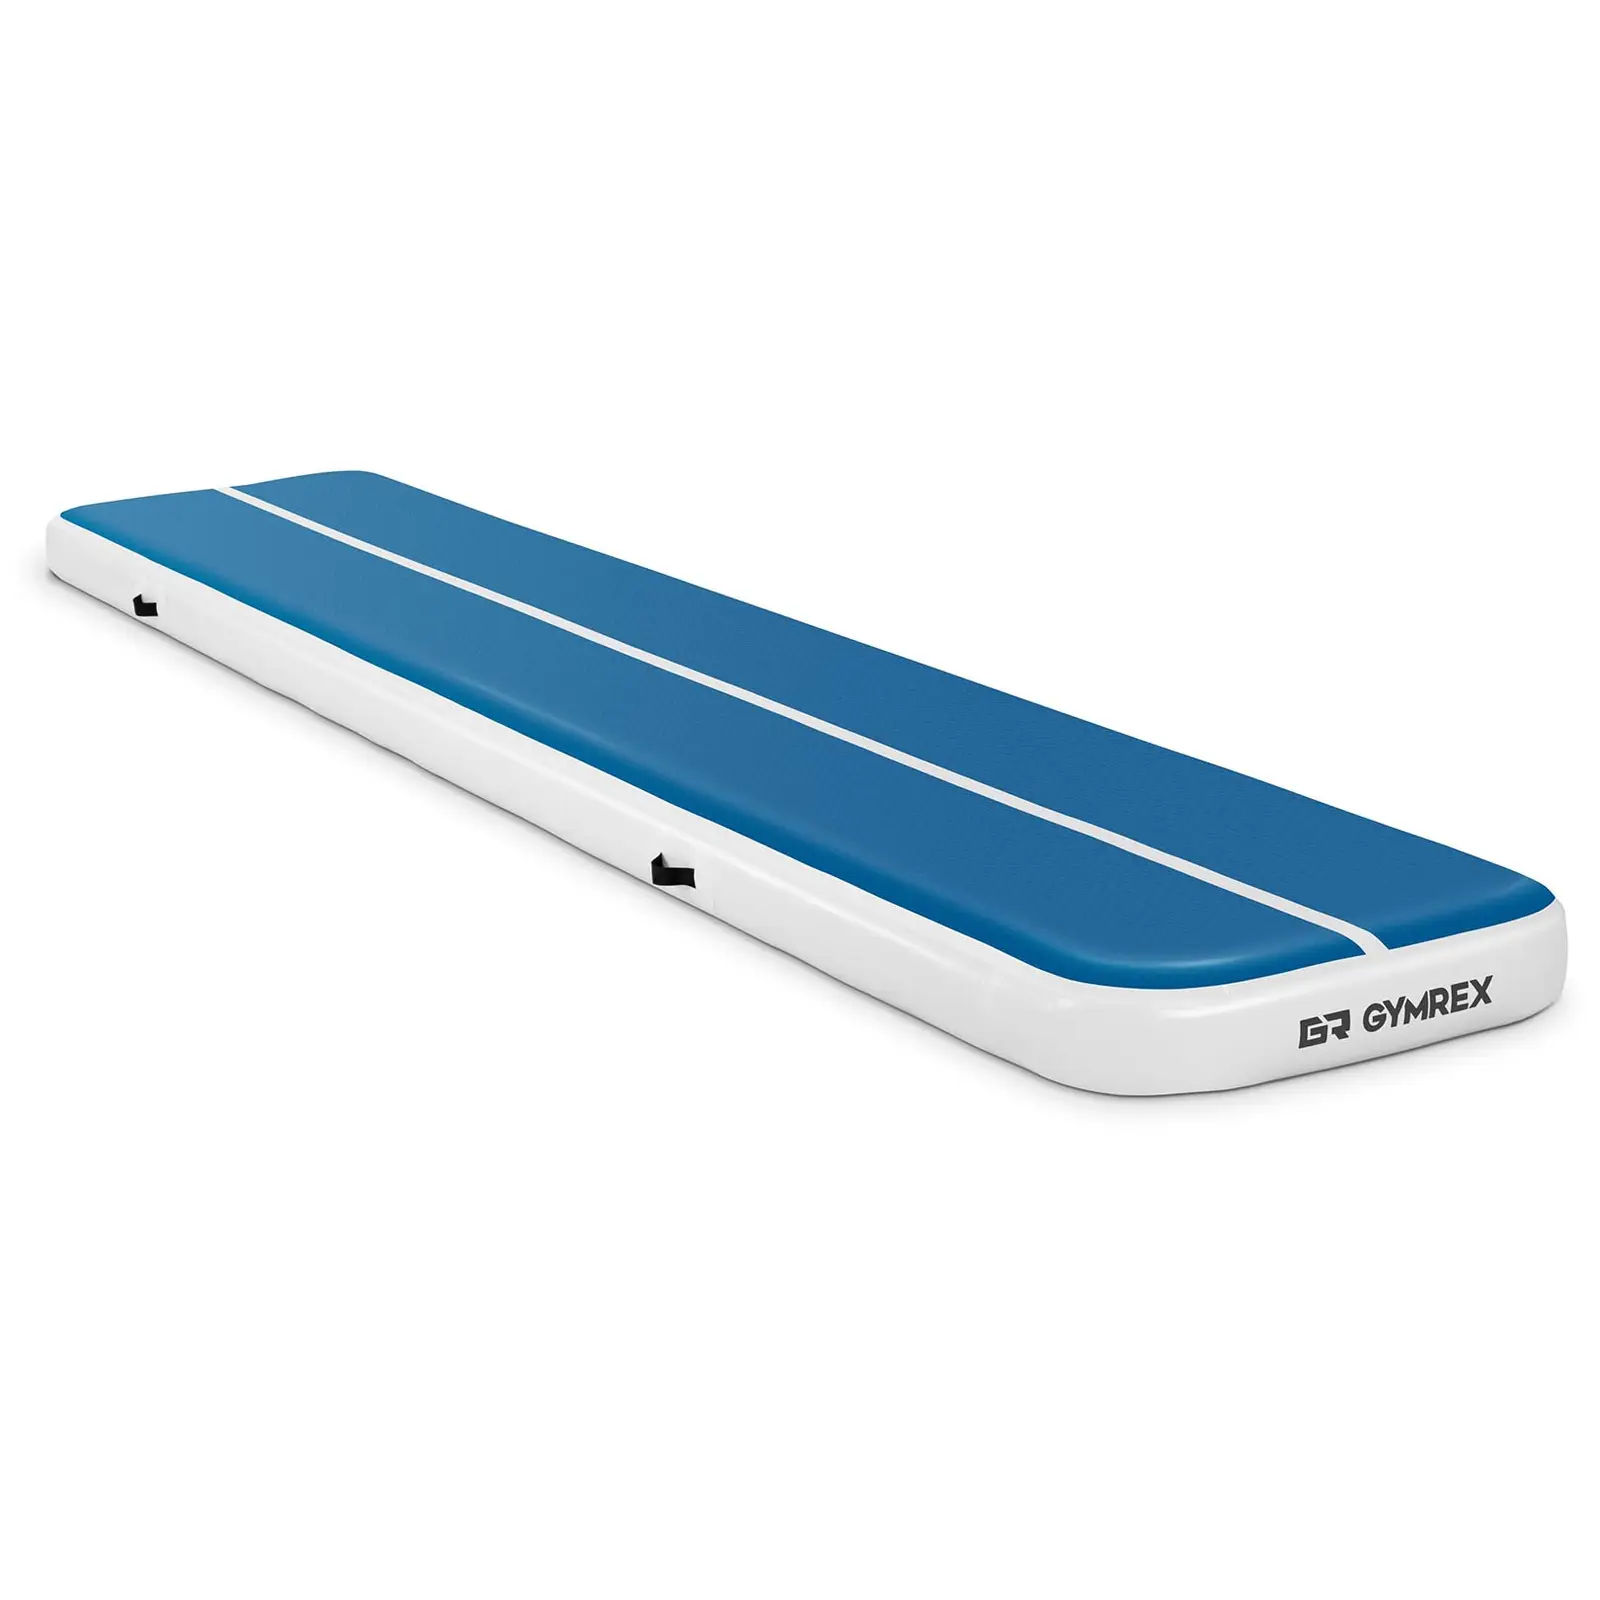 Oppblåsbar treningsmatte - 500 x 100 x 20 cm - 250 kg - blå/hvit